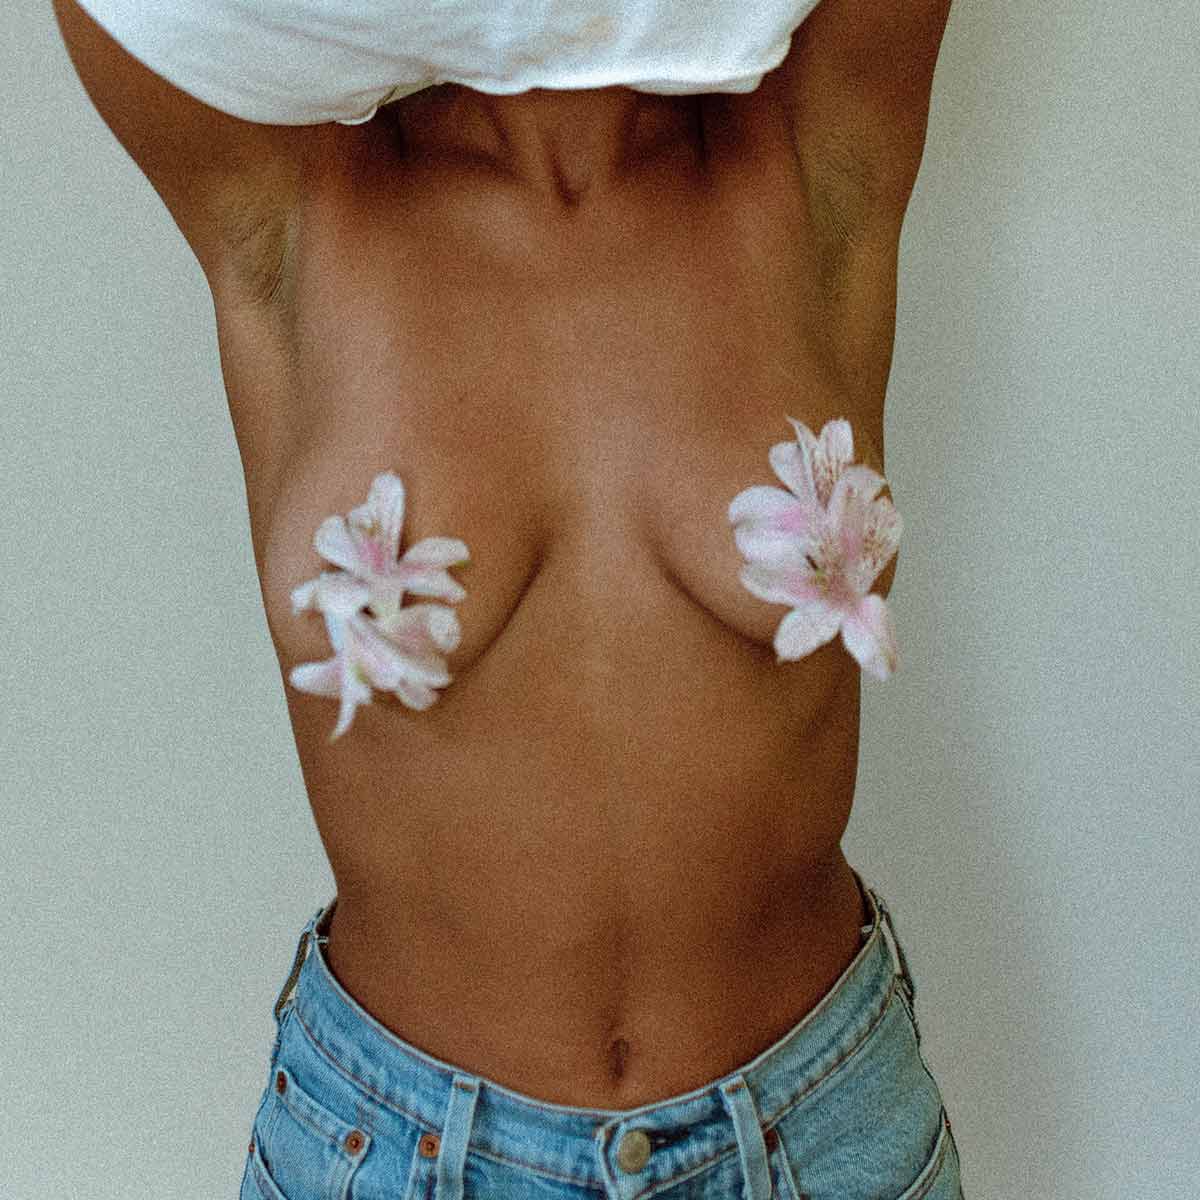 Femme torse nu avec des fleurs au bout des seins